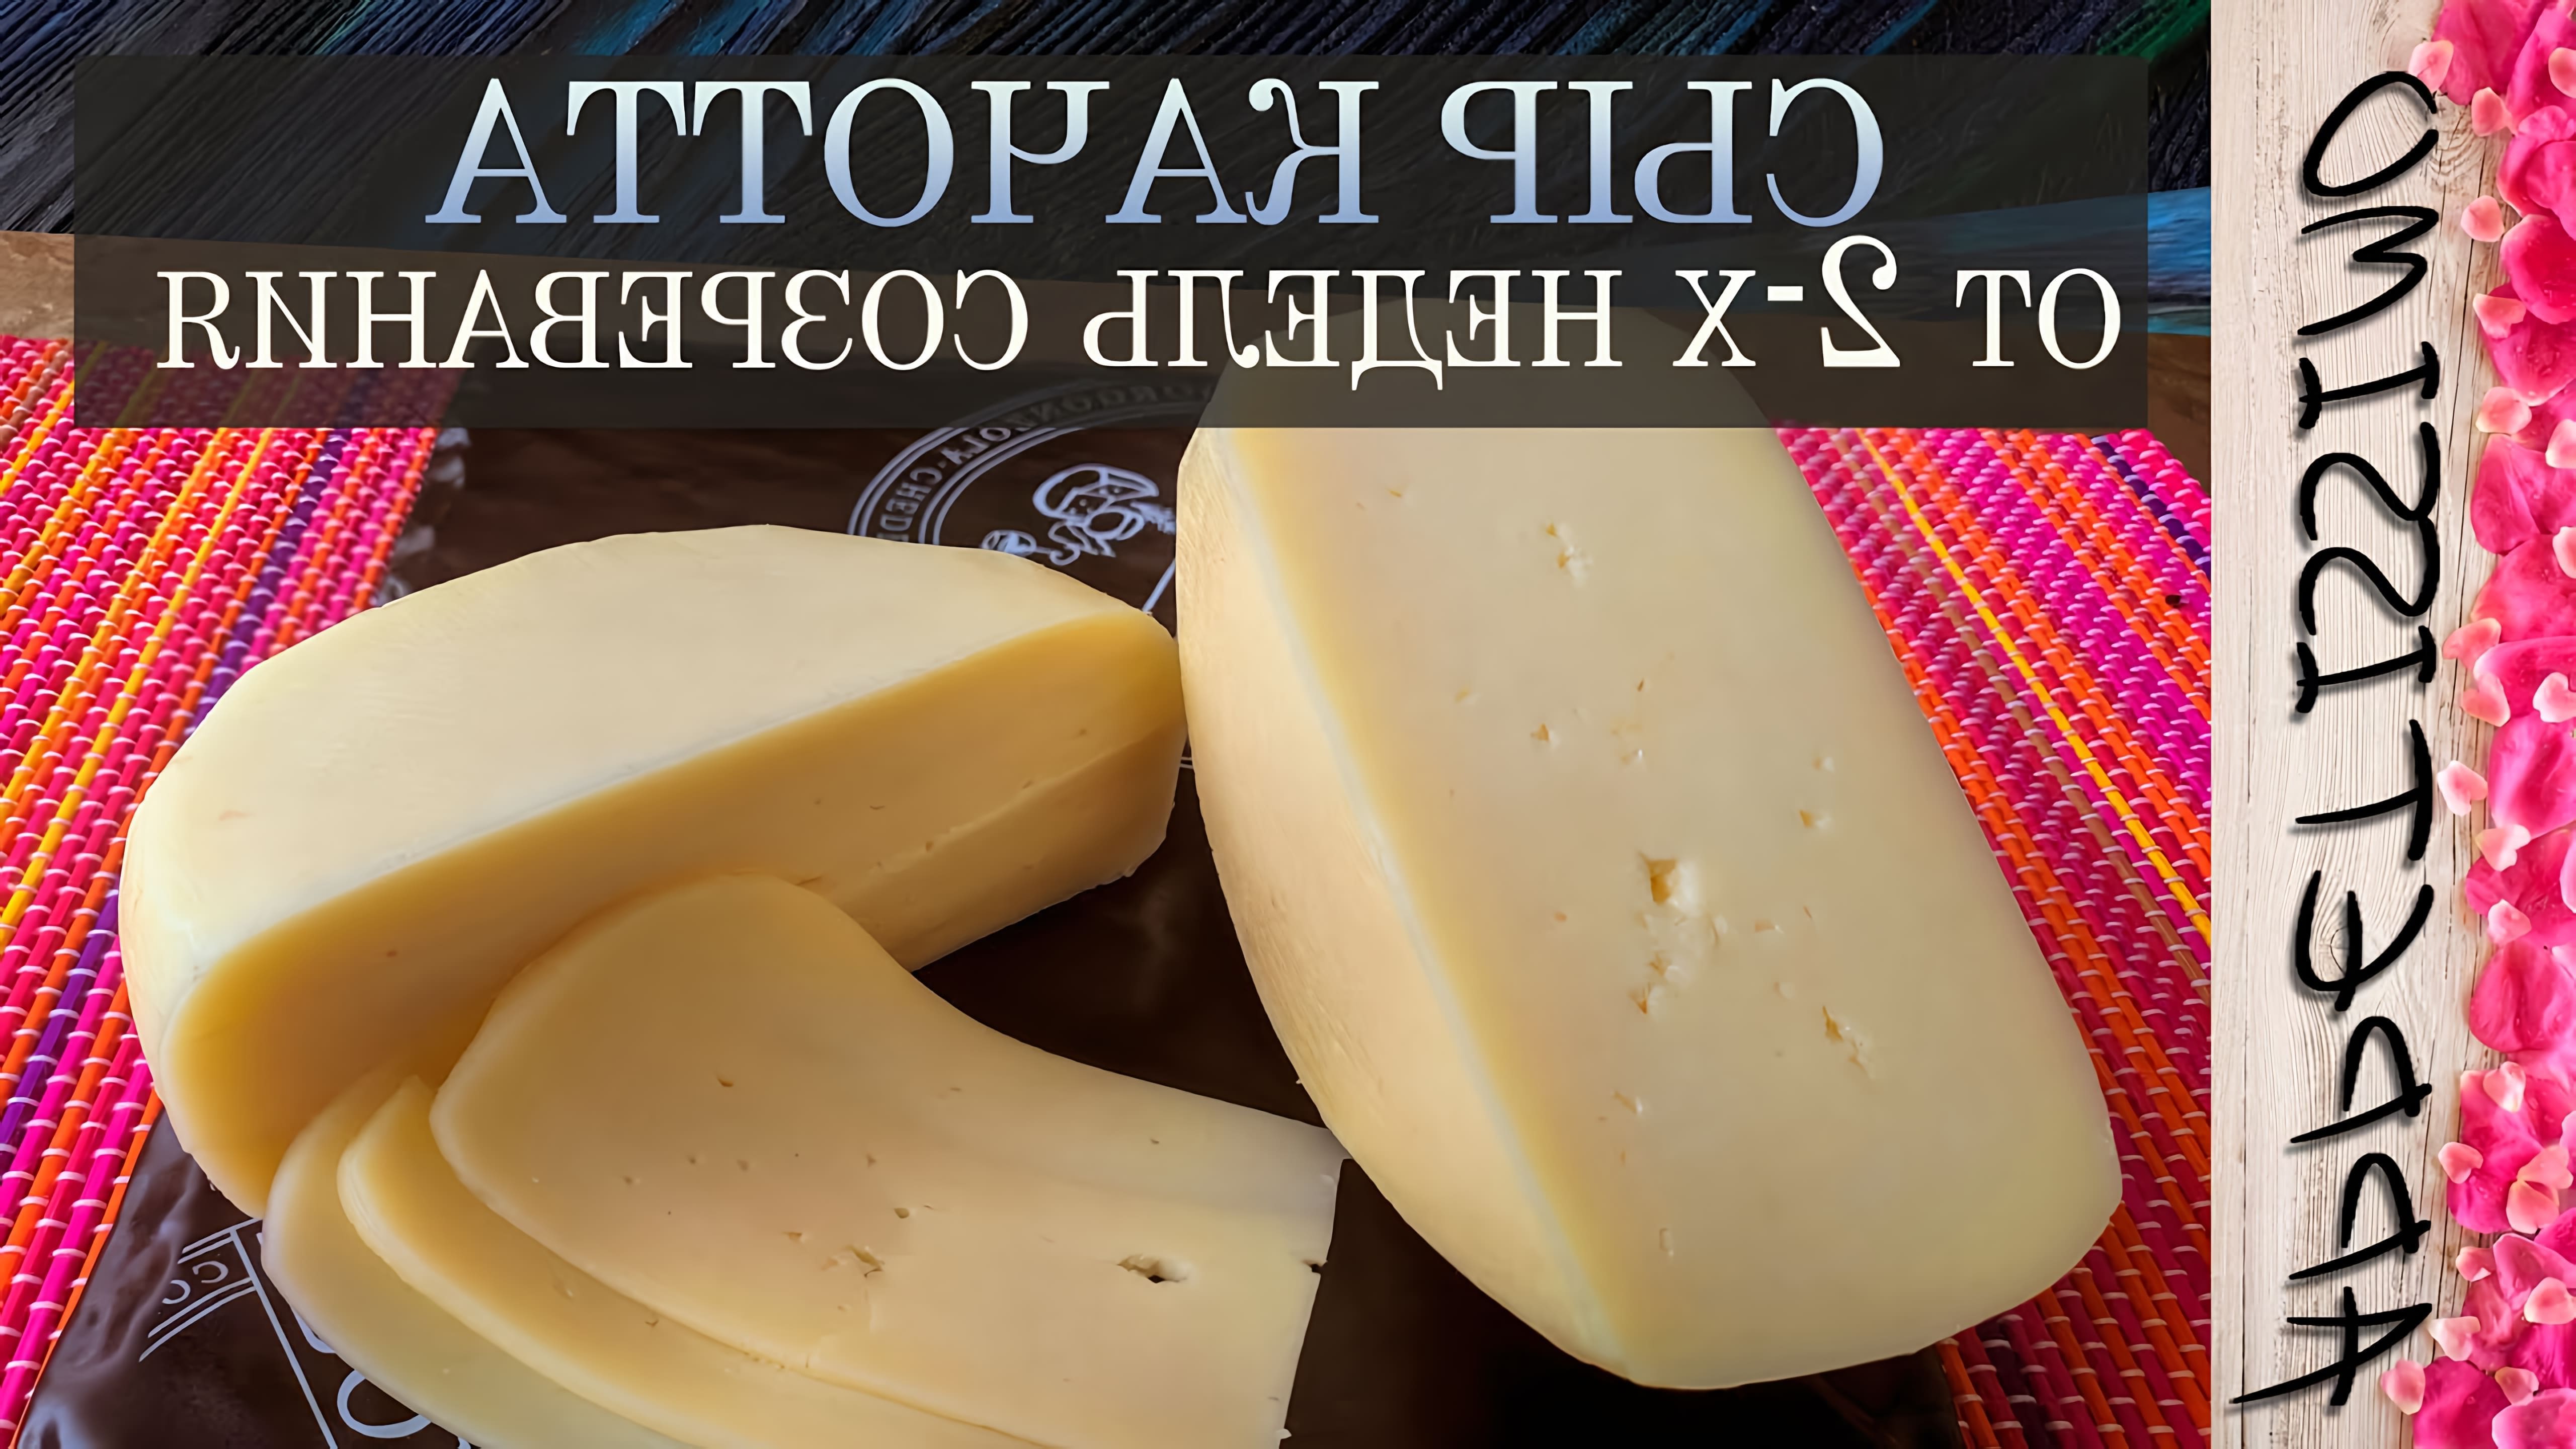 В данном видео представлен рецепт приготовления сыра "Качота" в домашних условиях